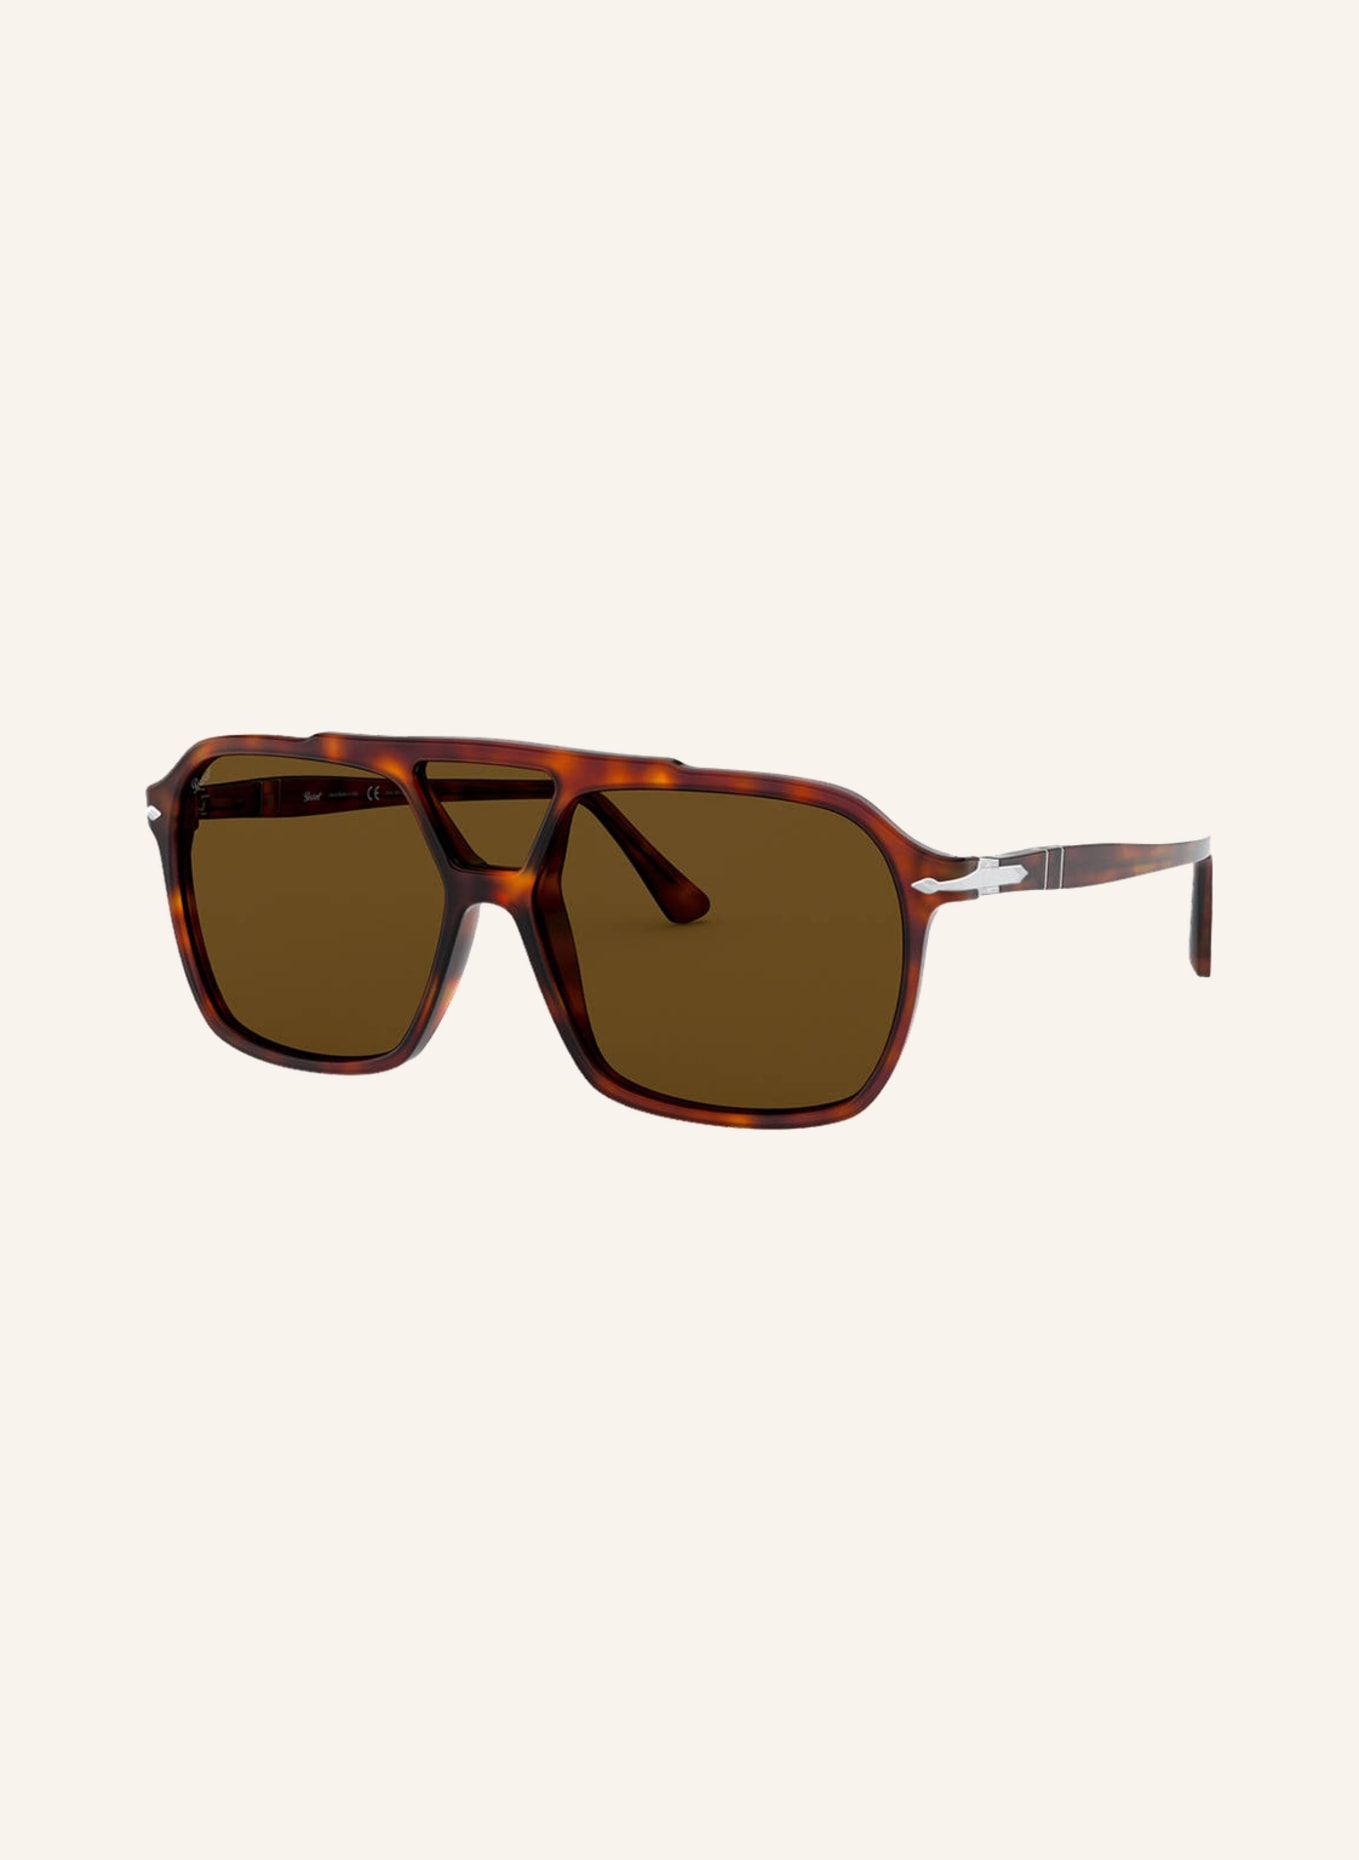 Persol Sunglasses PO 3223S, Color: 24/53 - HAVANA/ BROWN  (Image 1)